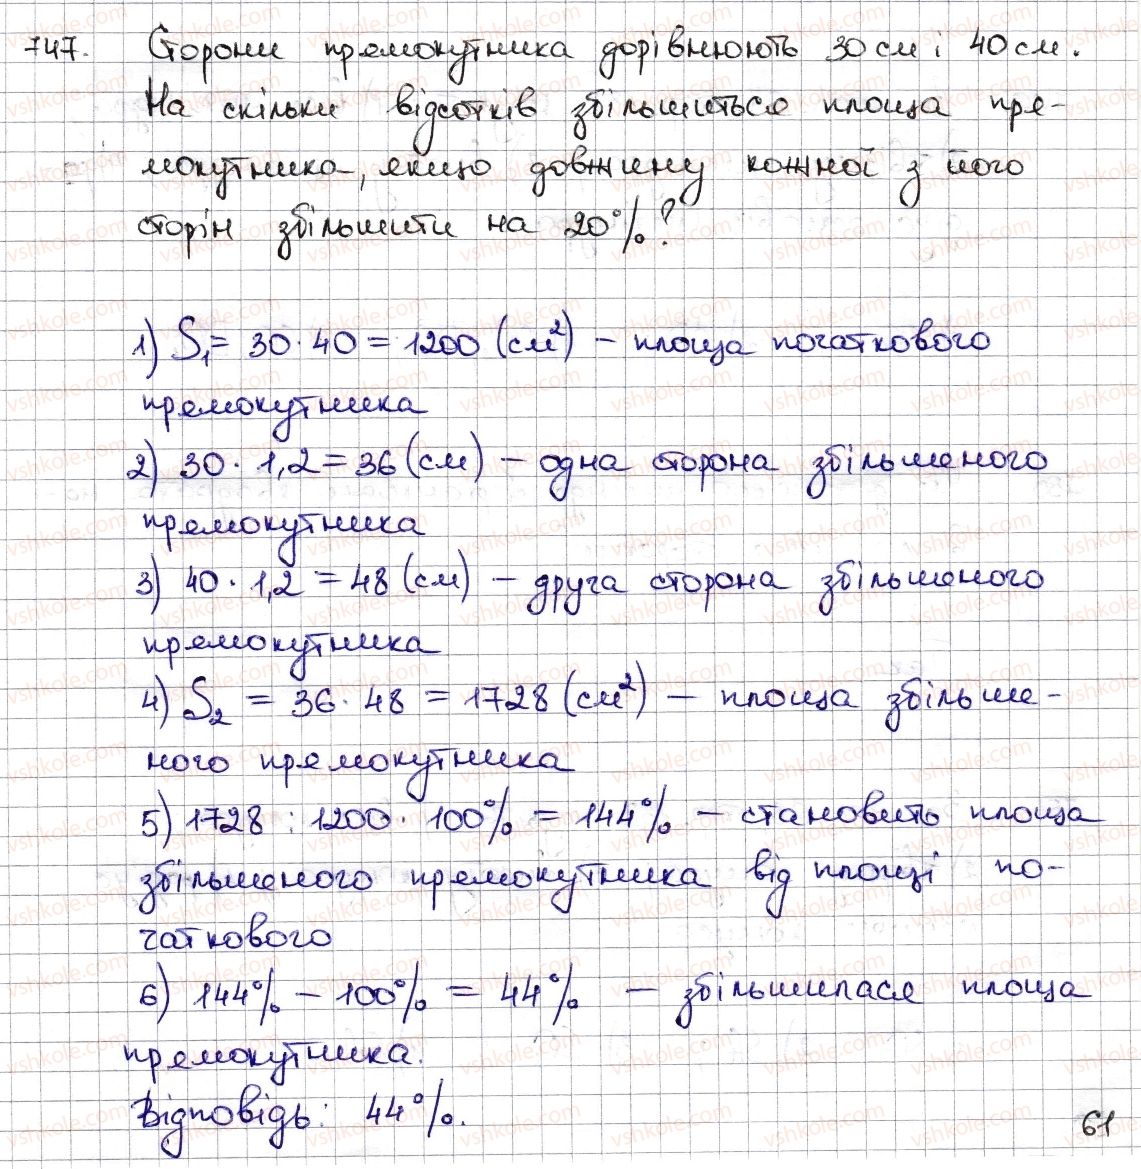 6-matematika-na-tarasenkova-im-bogatirova-om-kolomiyets-zo-serdyuk-2014--rozdil-3-vidnoshennya-i-proportsiyi-17-diagrami-747-rnd6568.jpg